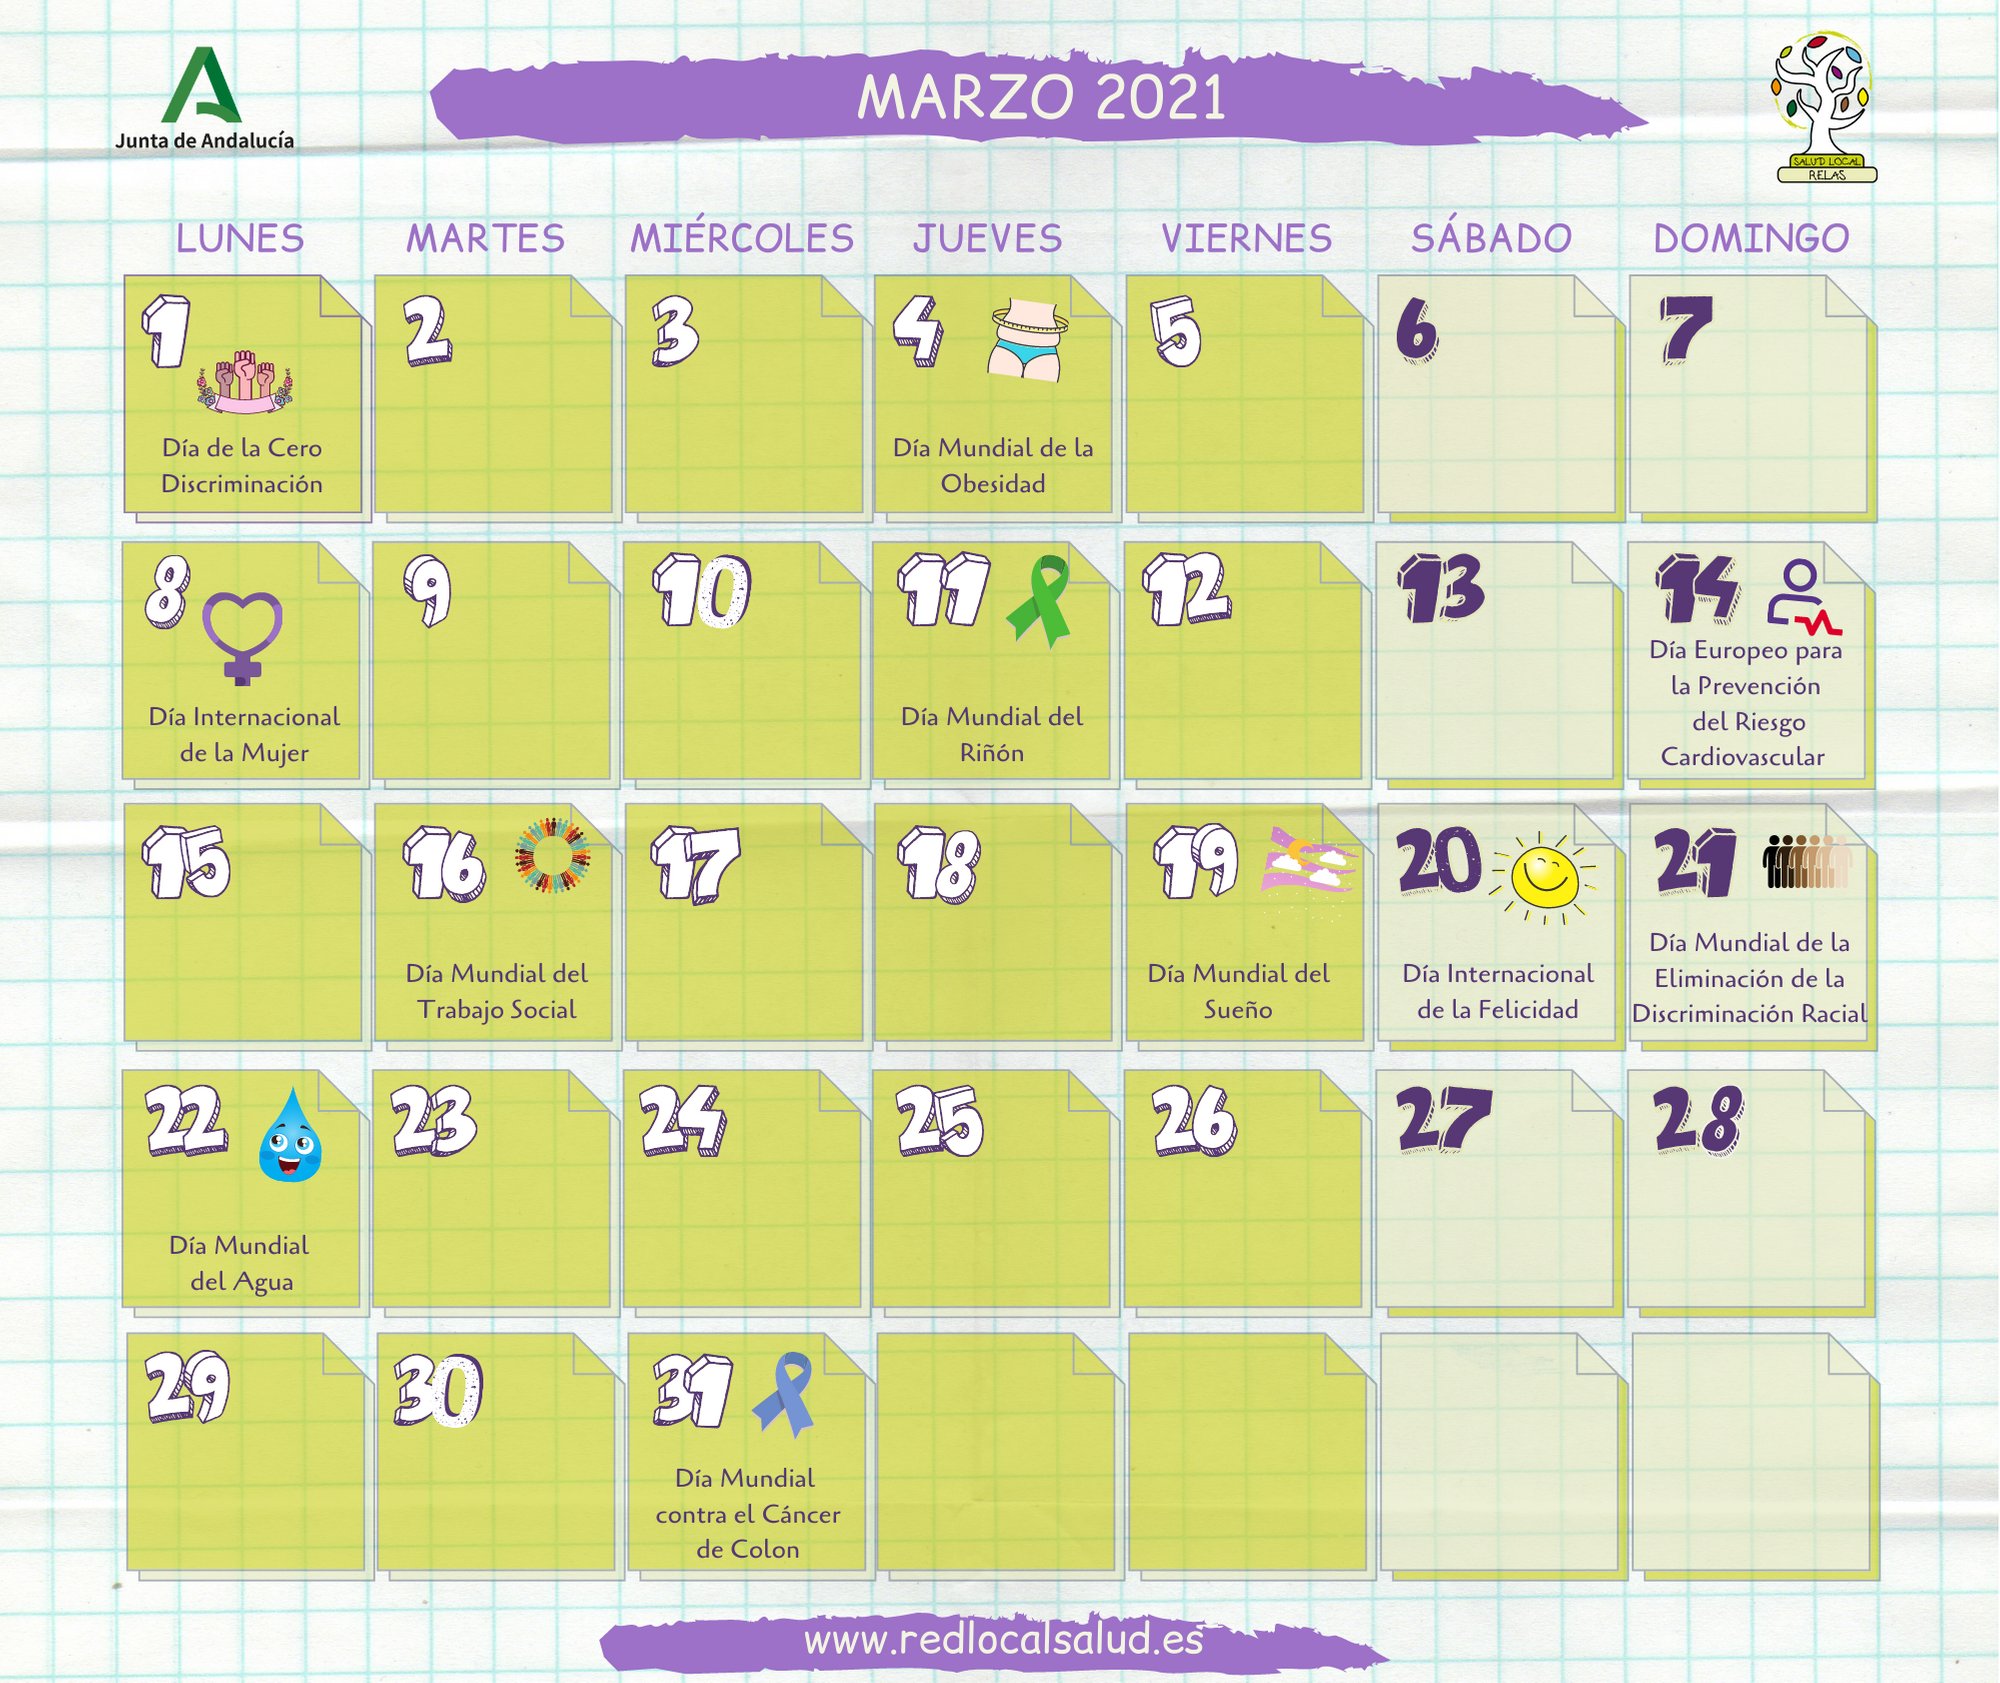 Calendario de Mundiales y salud | Red de Acción en Salud